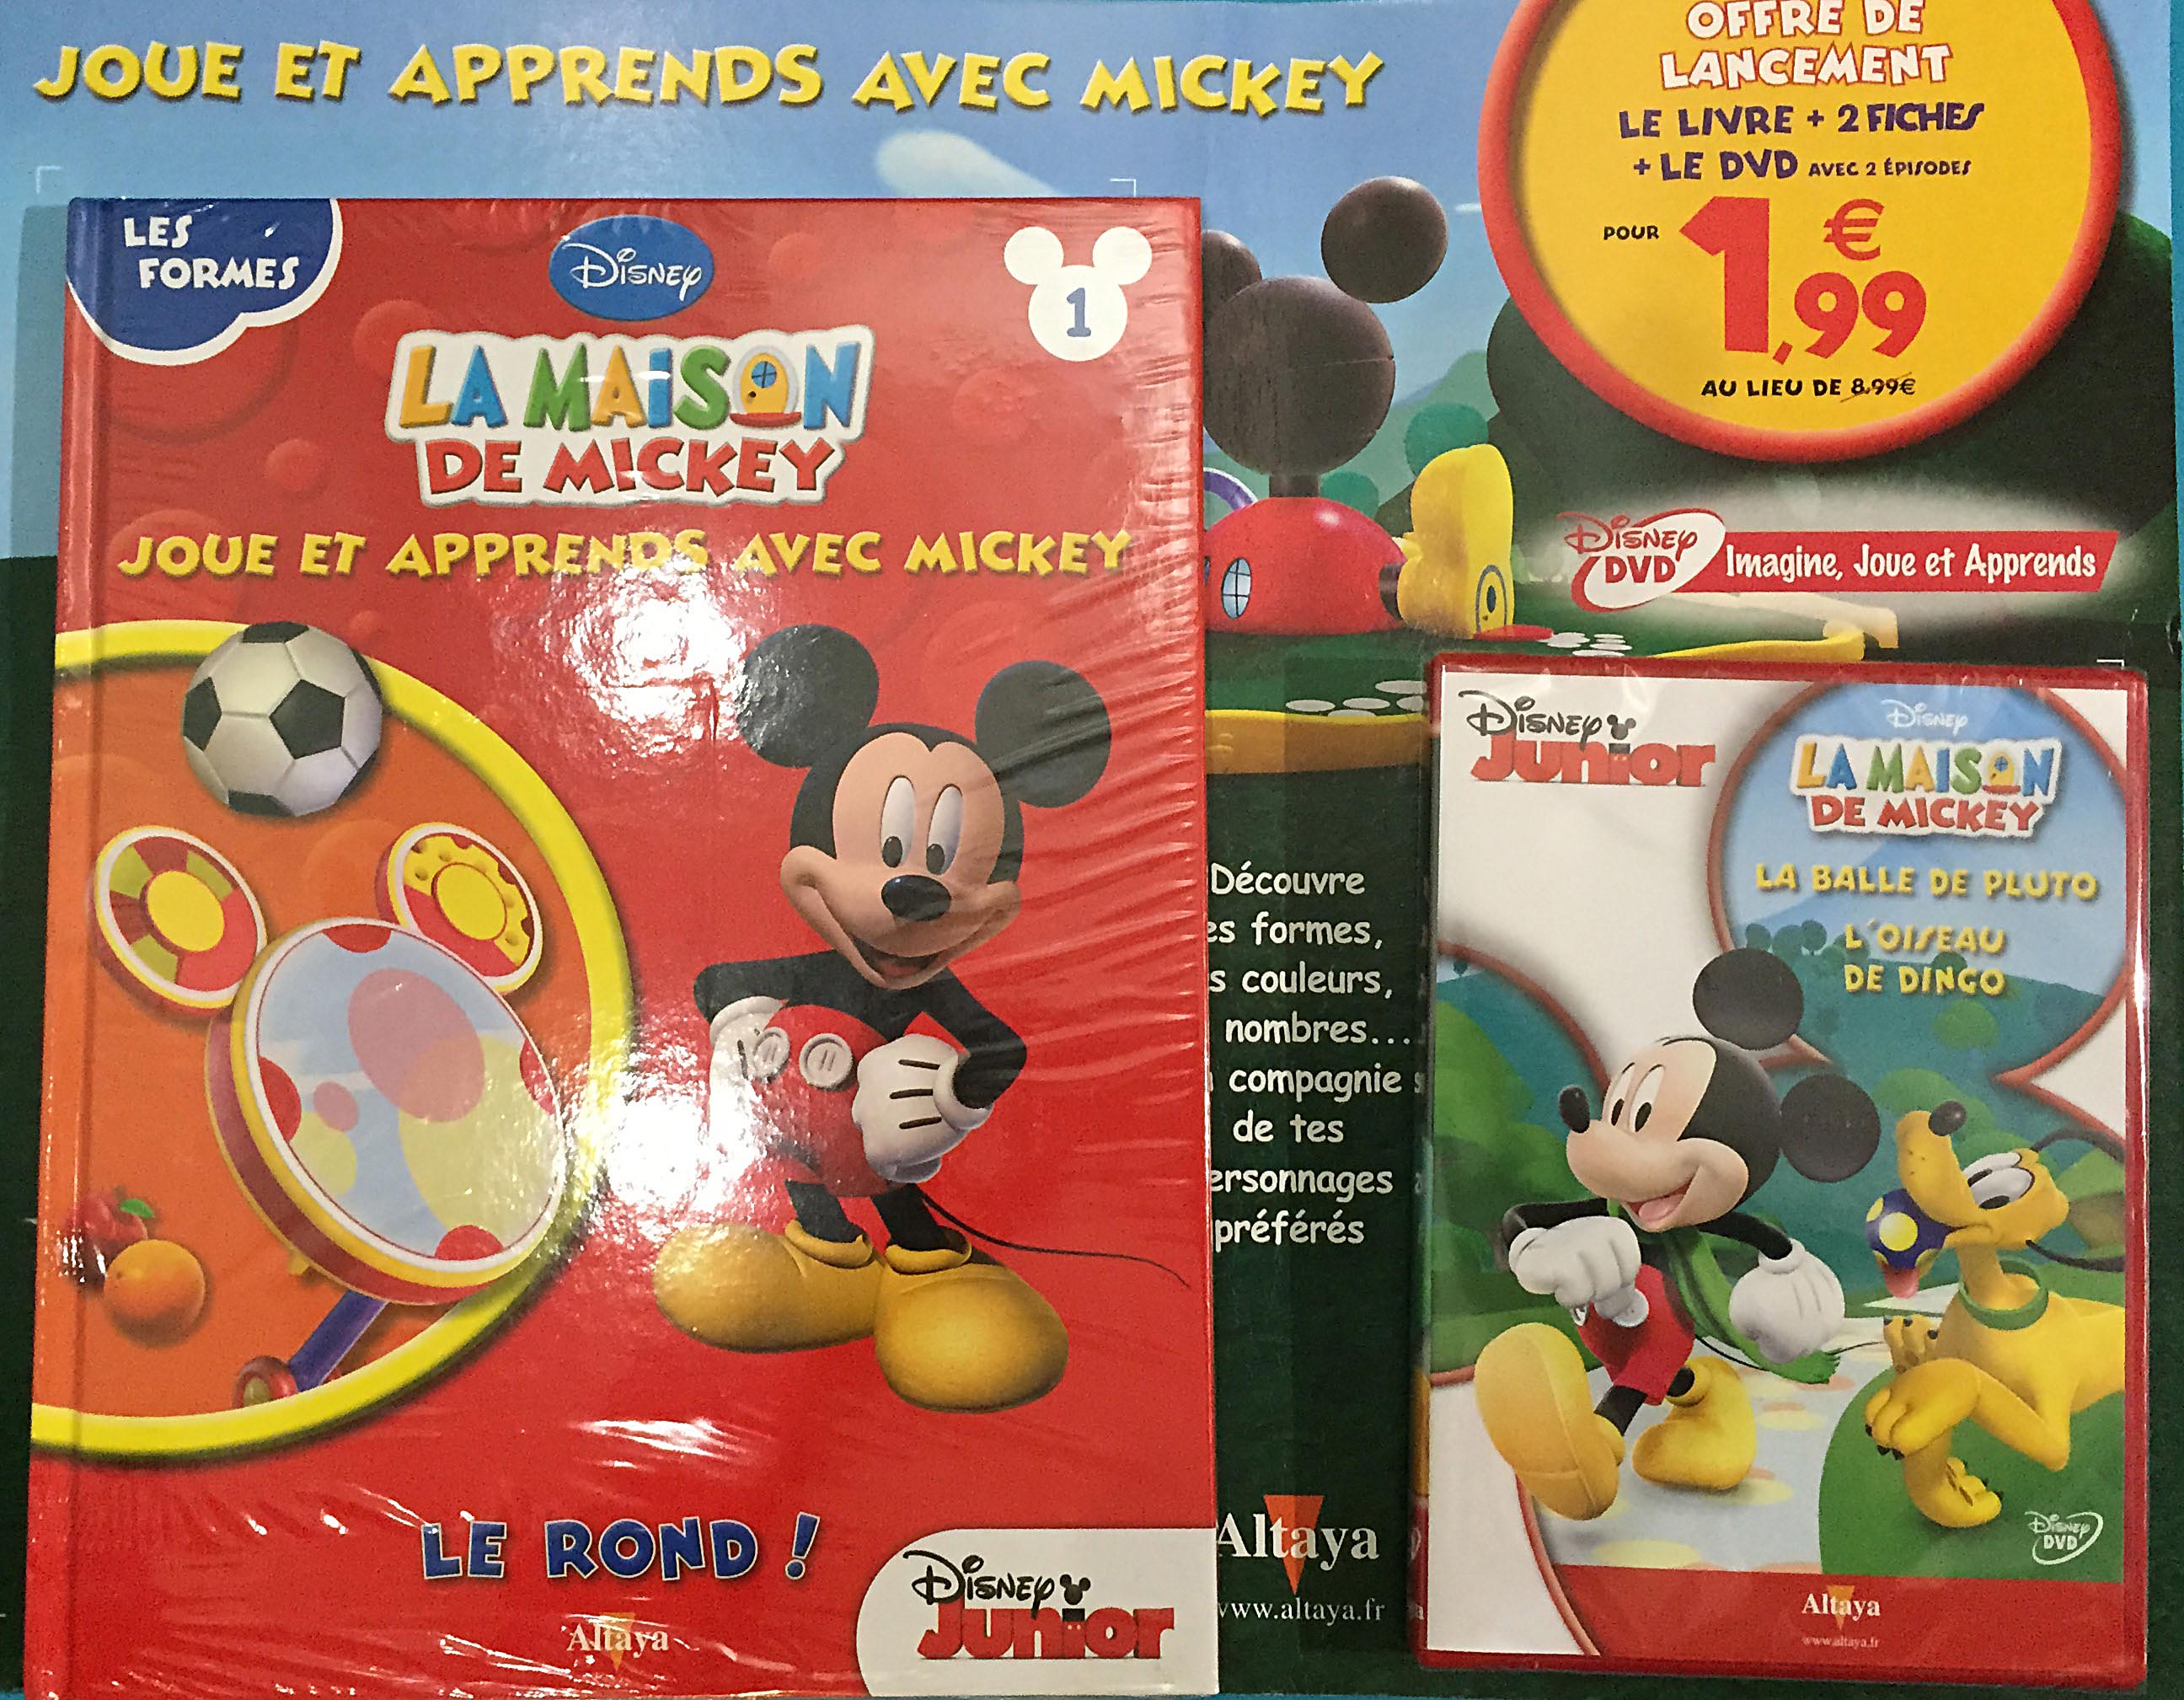 Jouet catapulte offert avec le Journal de Mickey